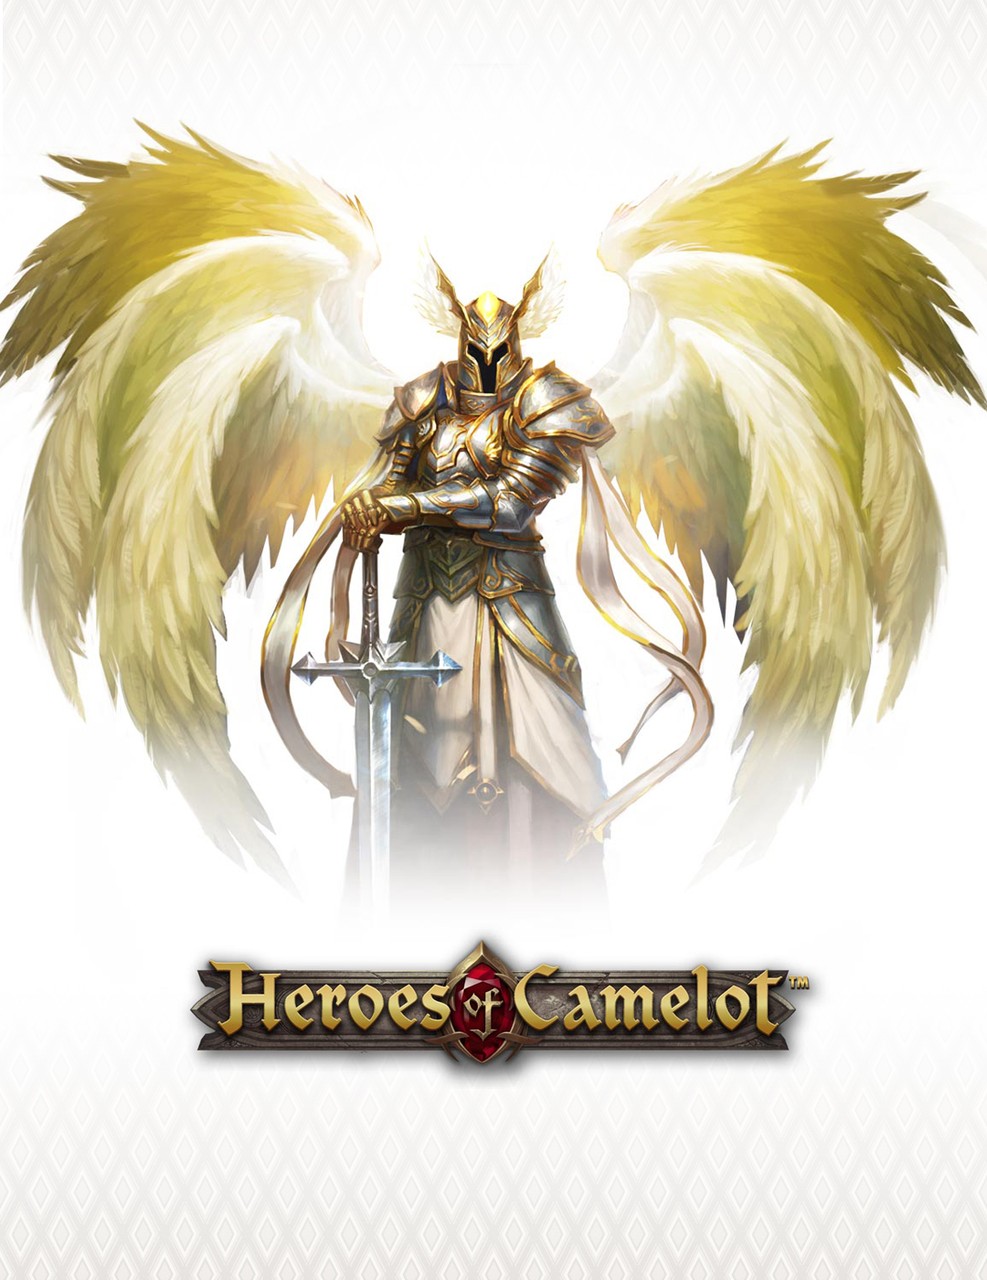 Фото Taal / Таал с крыльями за спиной оперся руками на свой меч, из онлайн игры Heroes of Camelot / Герои Камелота